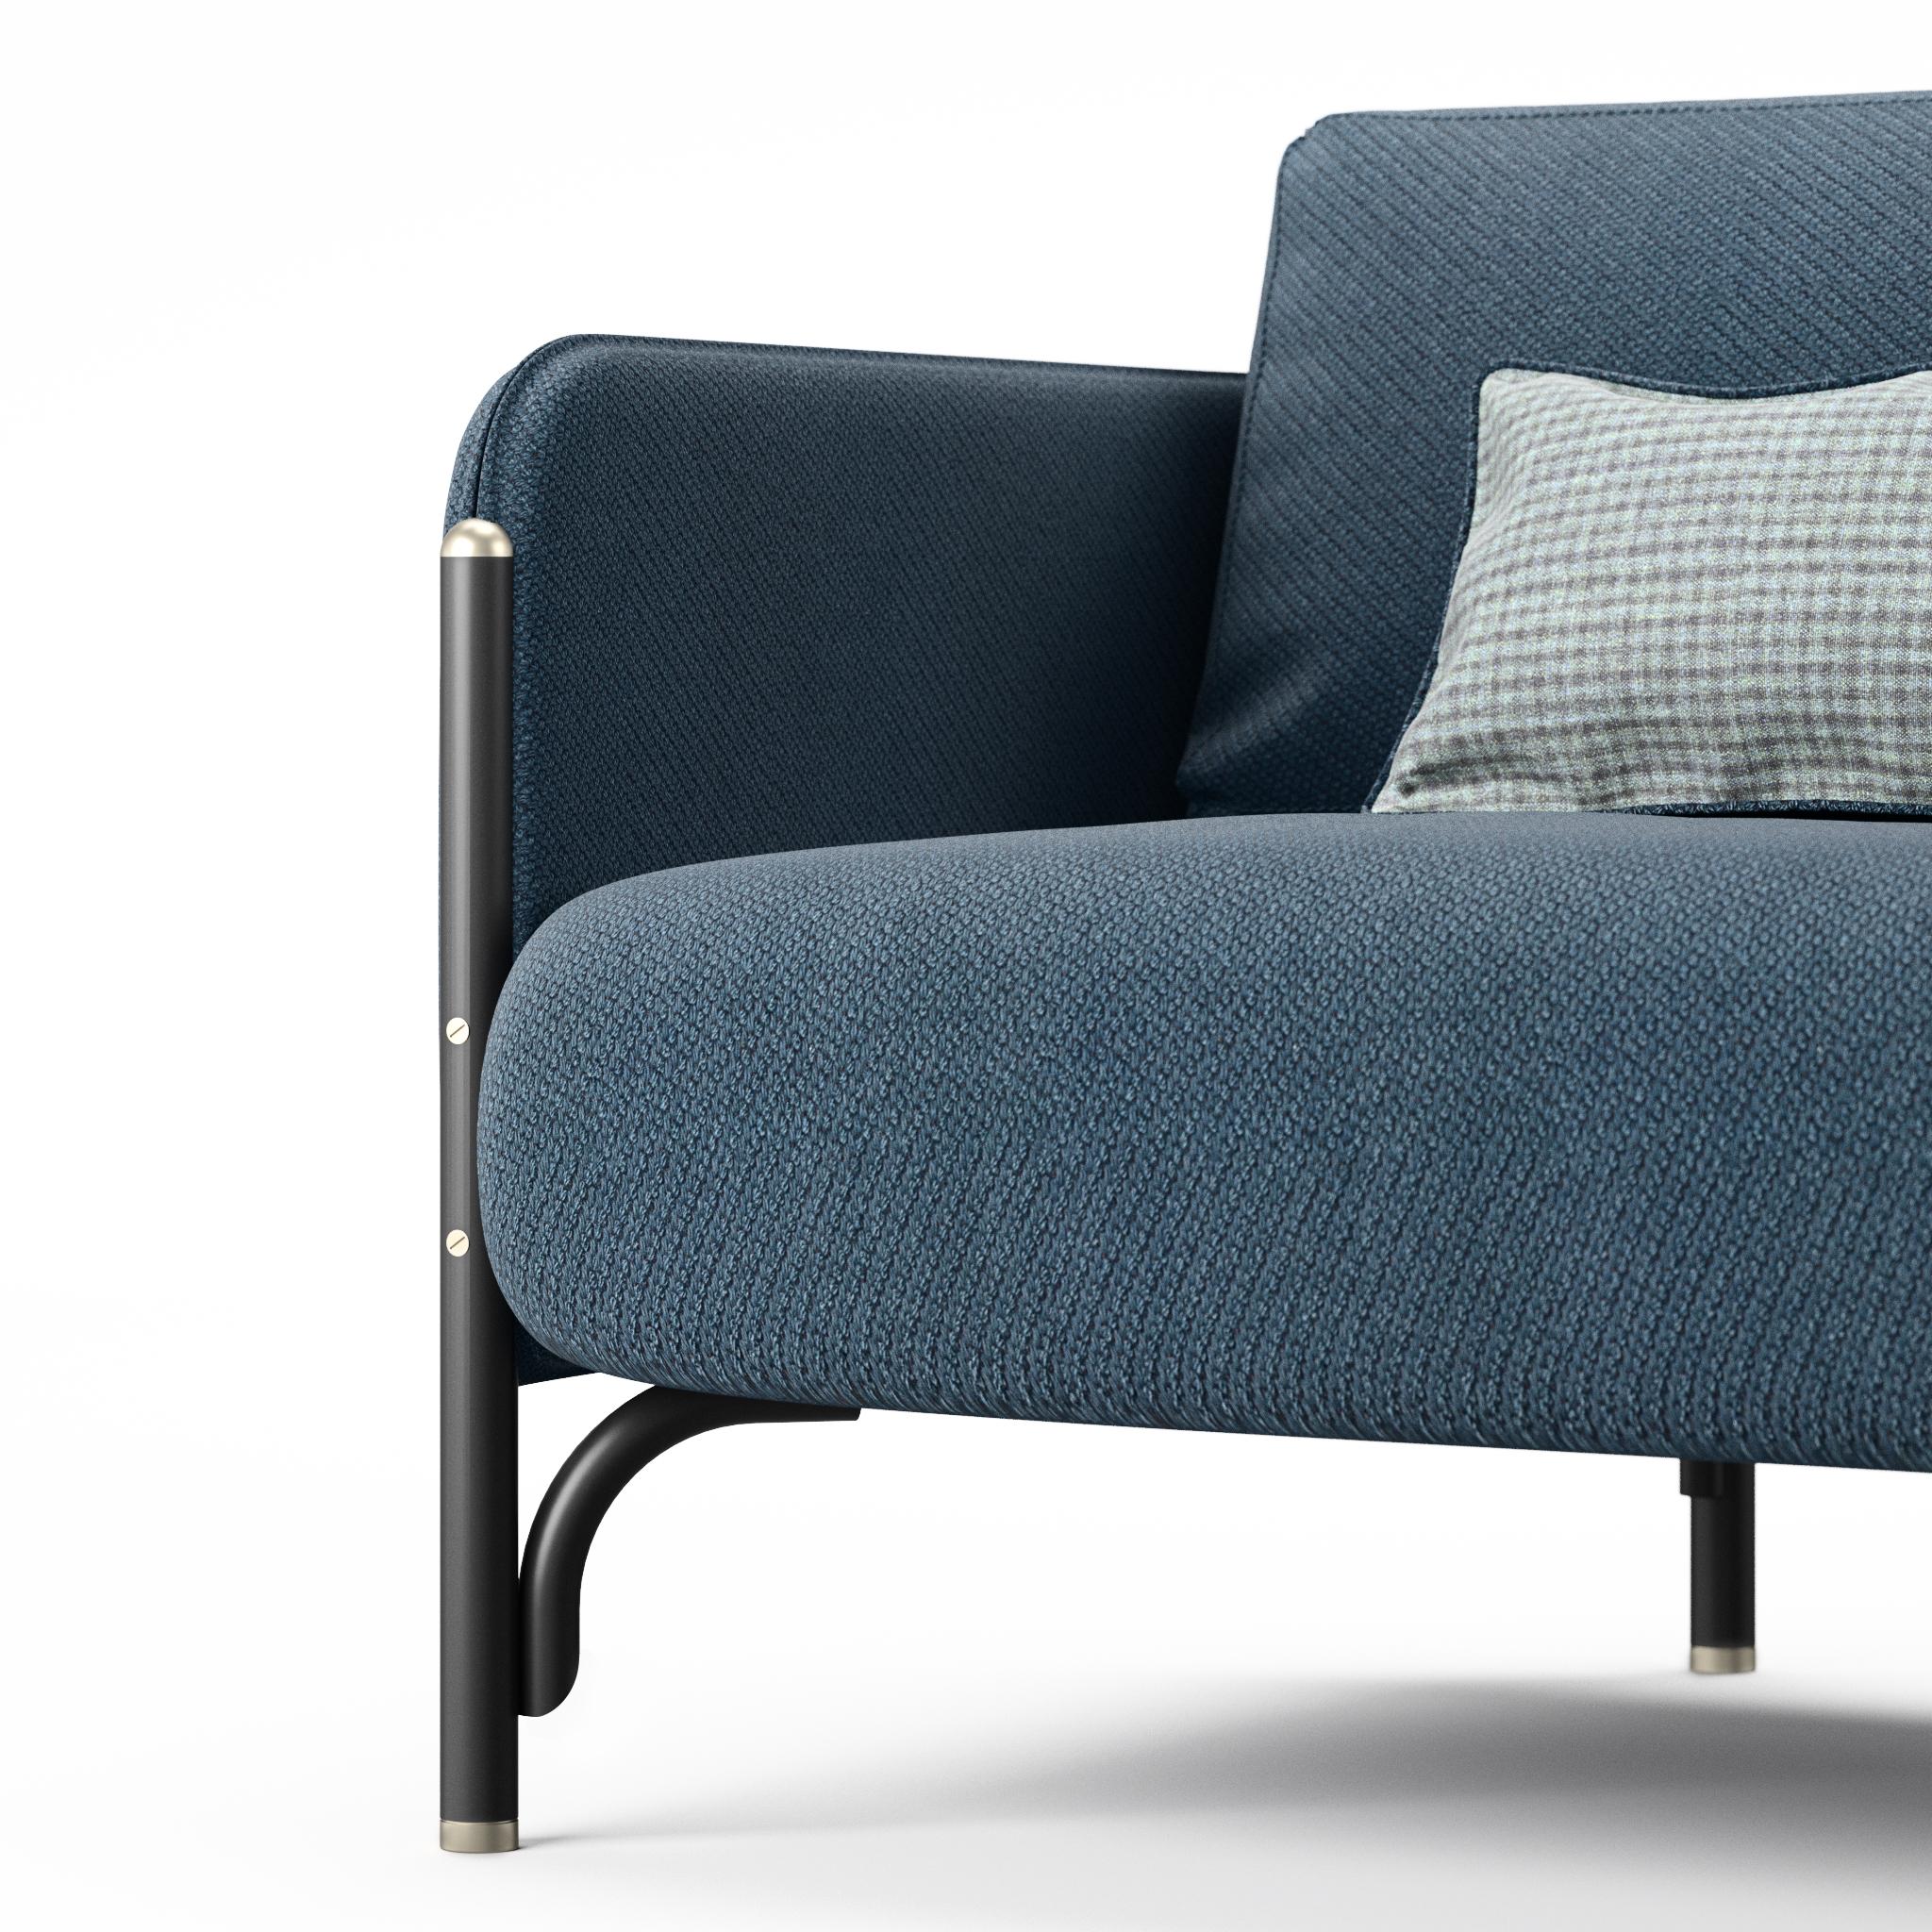 Dainelli Studio, détenu par le duo créatif de Leonardo et Marzia Dainelli, conçoit JANNIS, une collection de meubles rembourrés qui conviennent éminemment à un usage professionnel.

Canapé et fauteuil de salon à deux et trois places, avec des